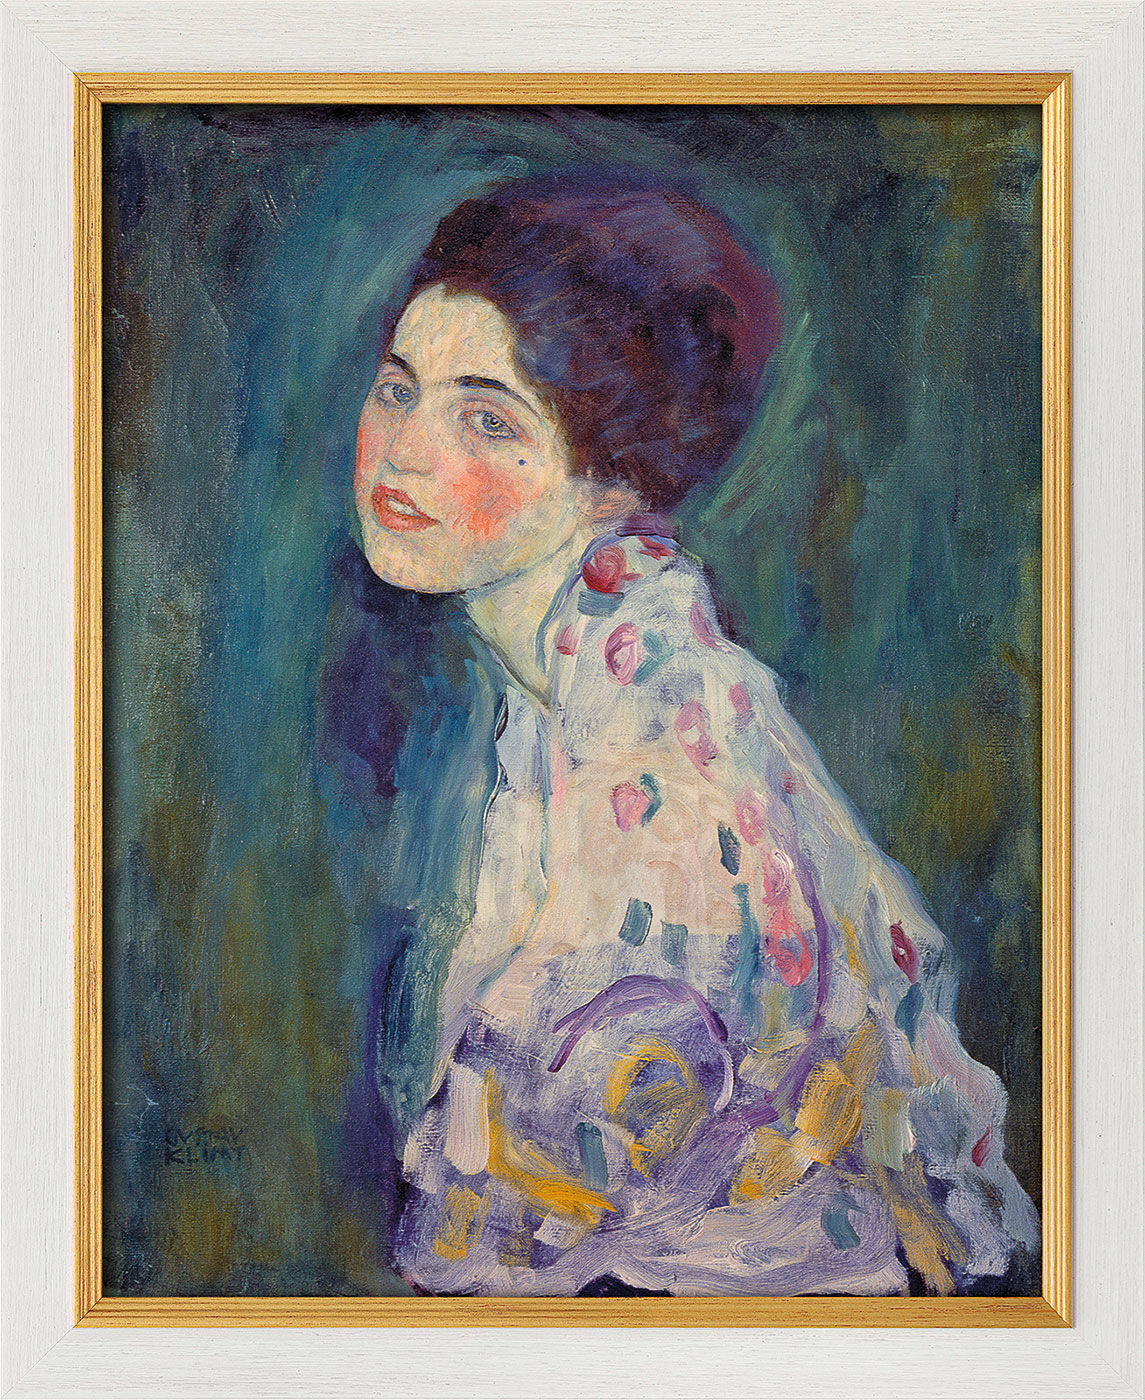 Billede "Portræt af en dame" (1916-18), indrammet von Gustav Klimt